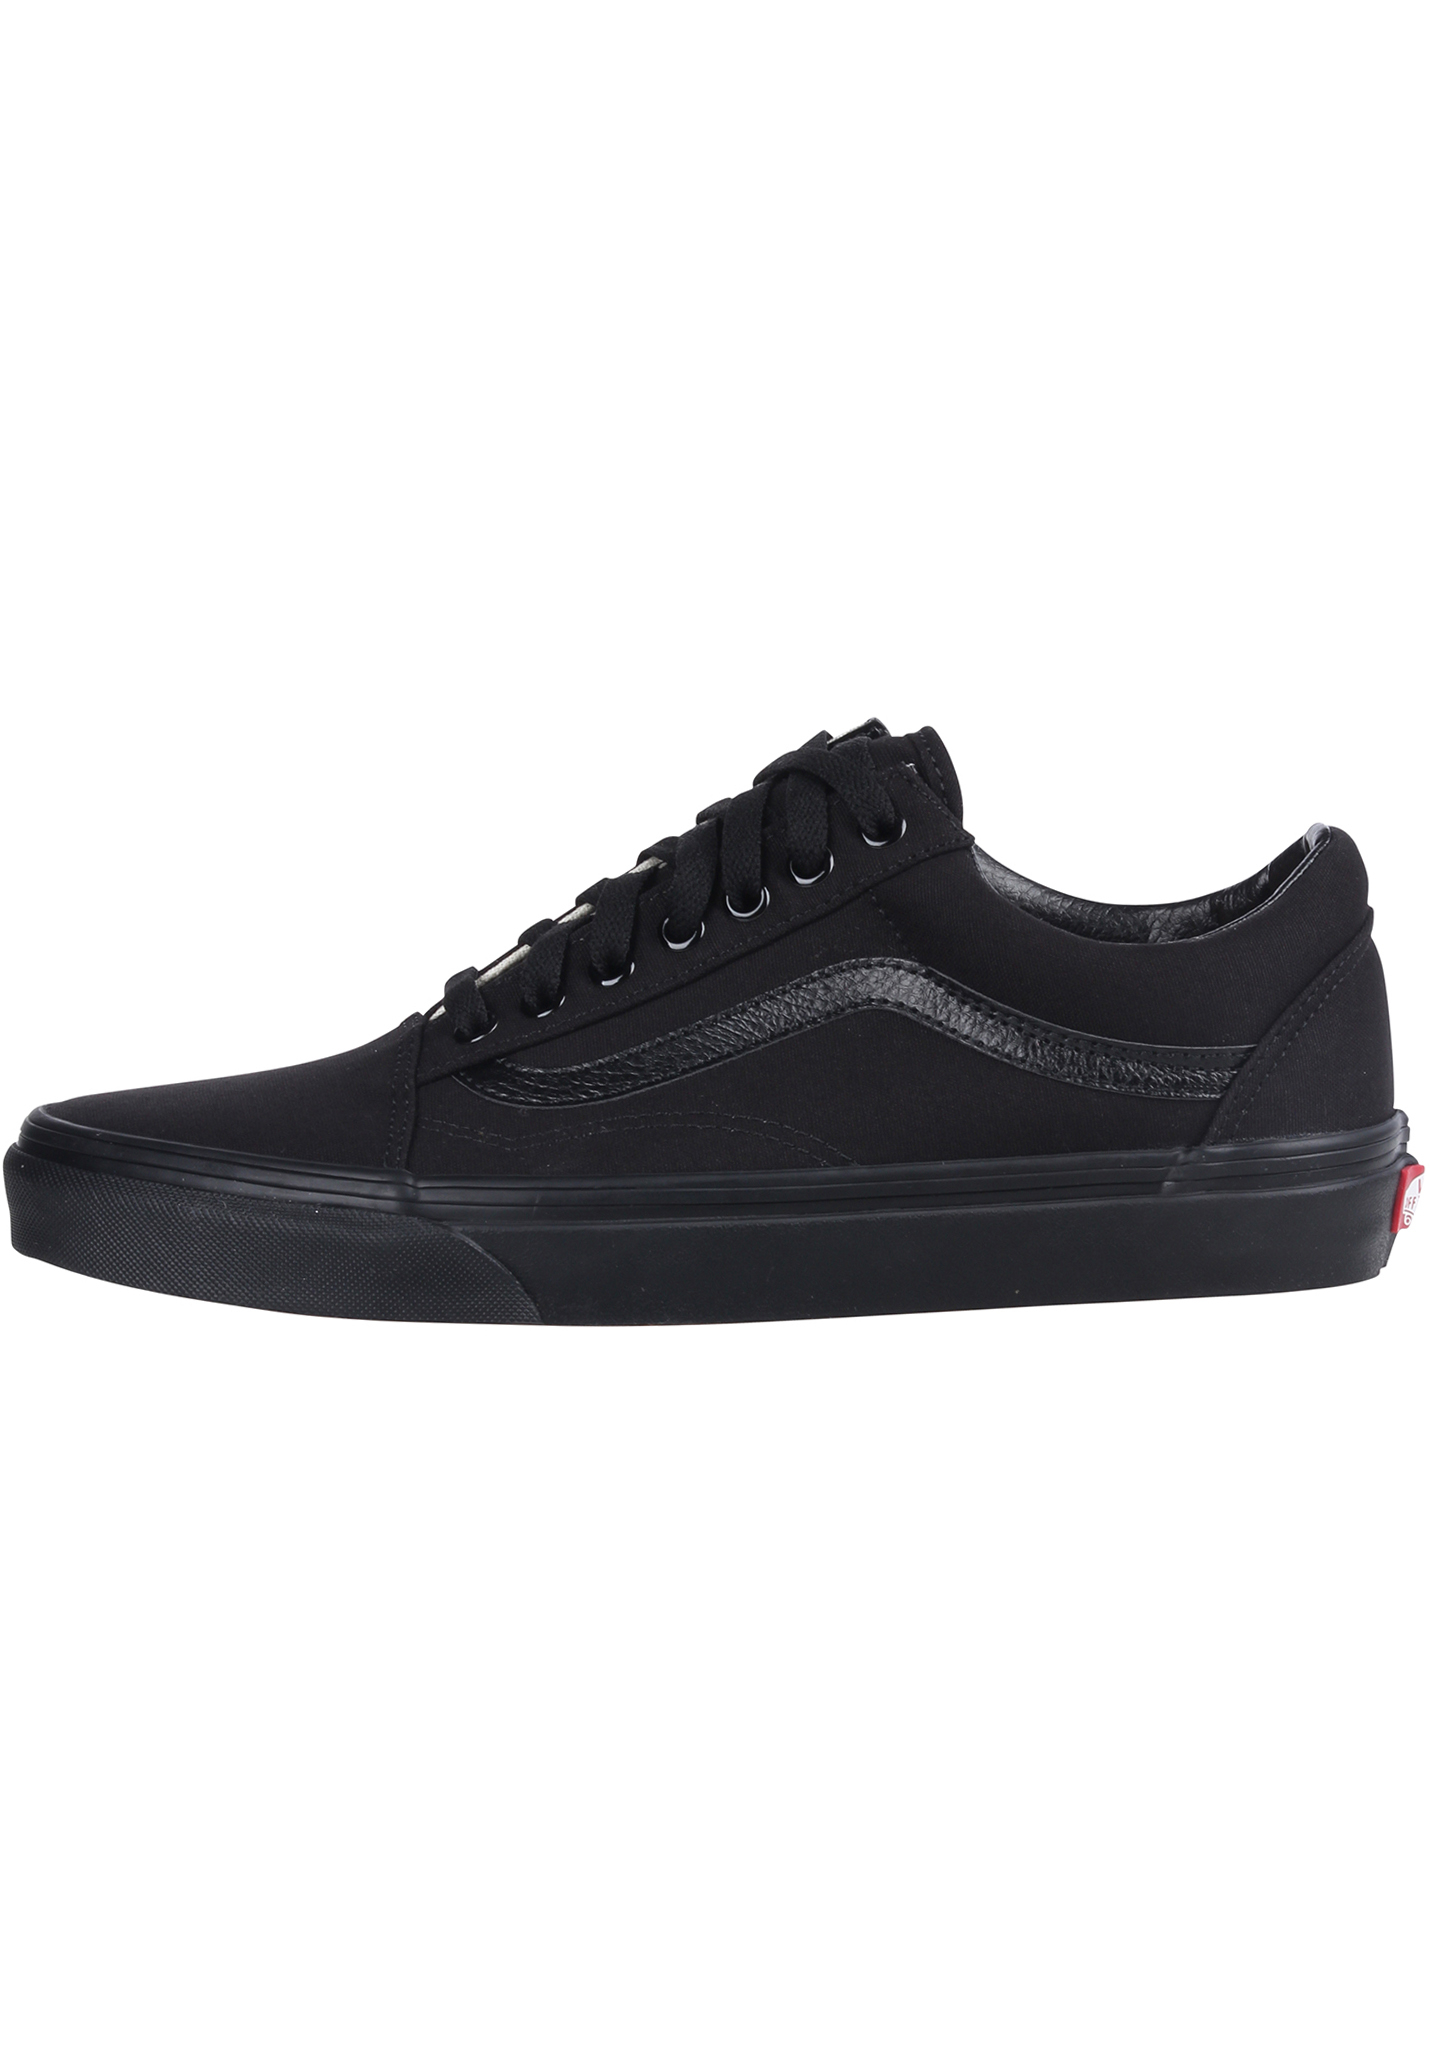 Vans Old Skool Sneaker black/black 43